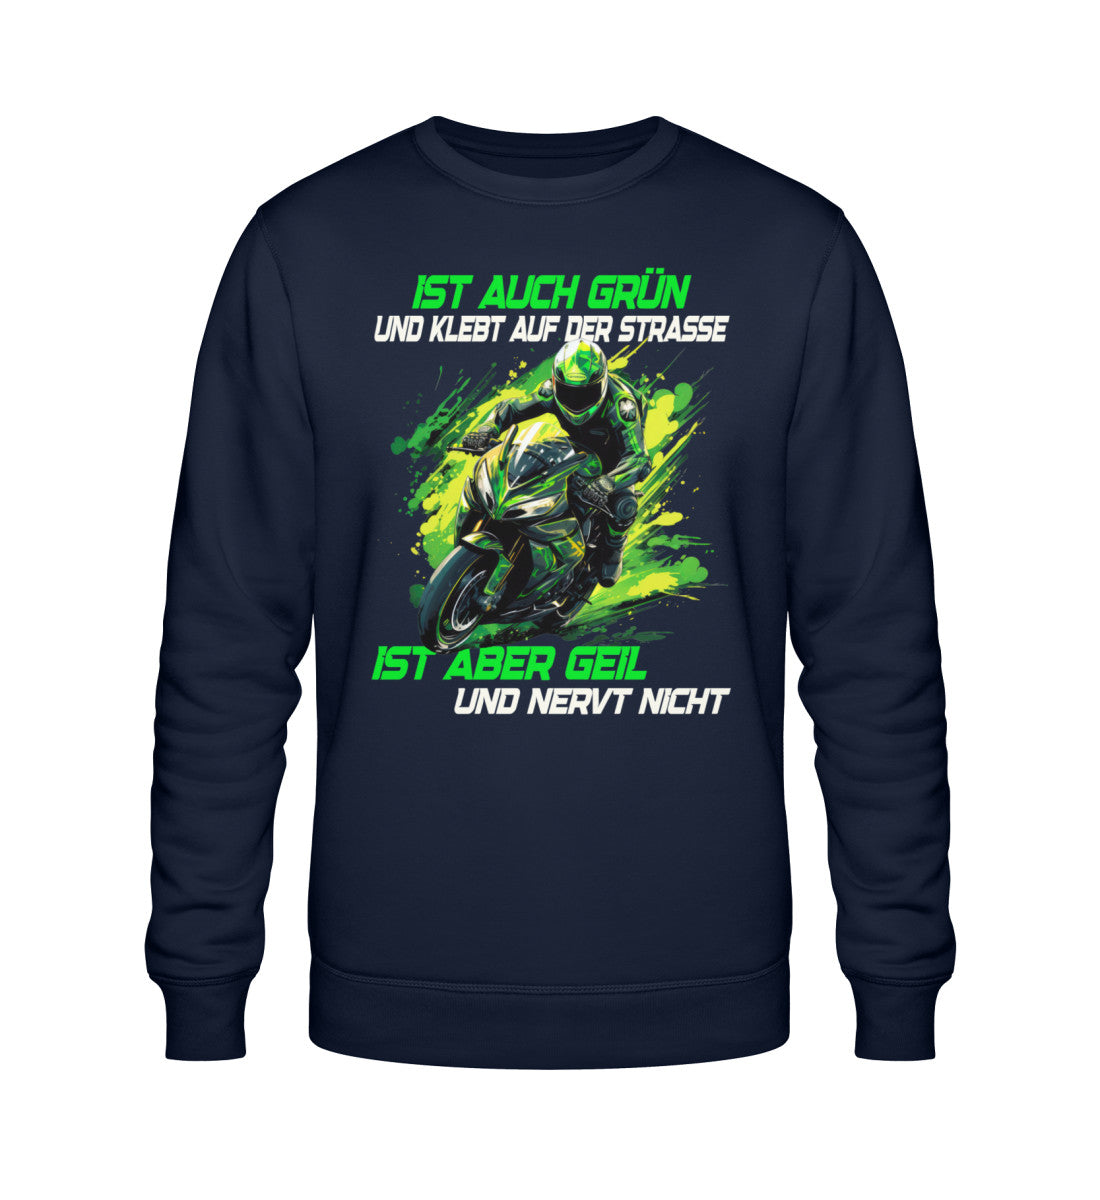 Ein Biker Sweatshirt für Motorradfahrer von Wingbikers mit dem Aufdruck, Ist auch grün und klebt auf der Straße, ist aber geil und nervt nicht! - in navy blau.